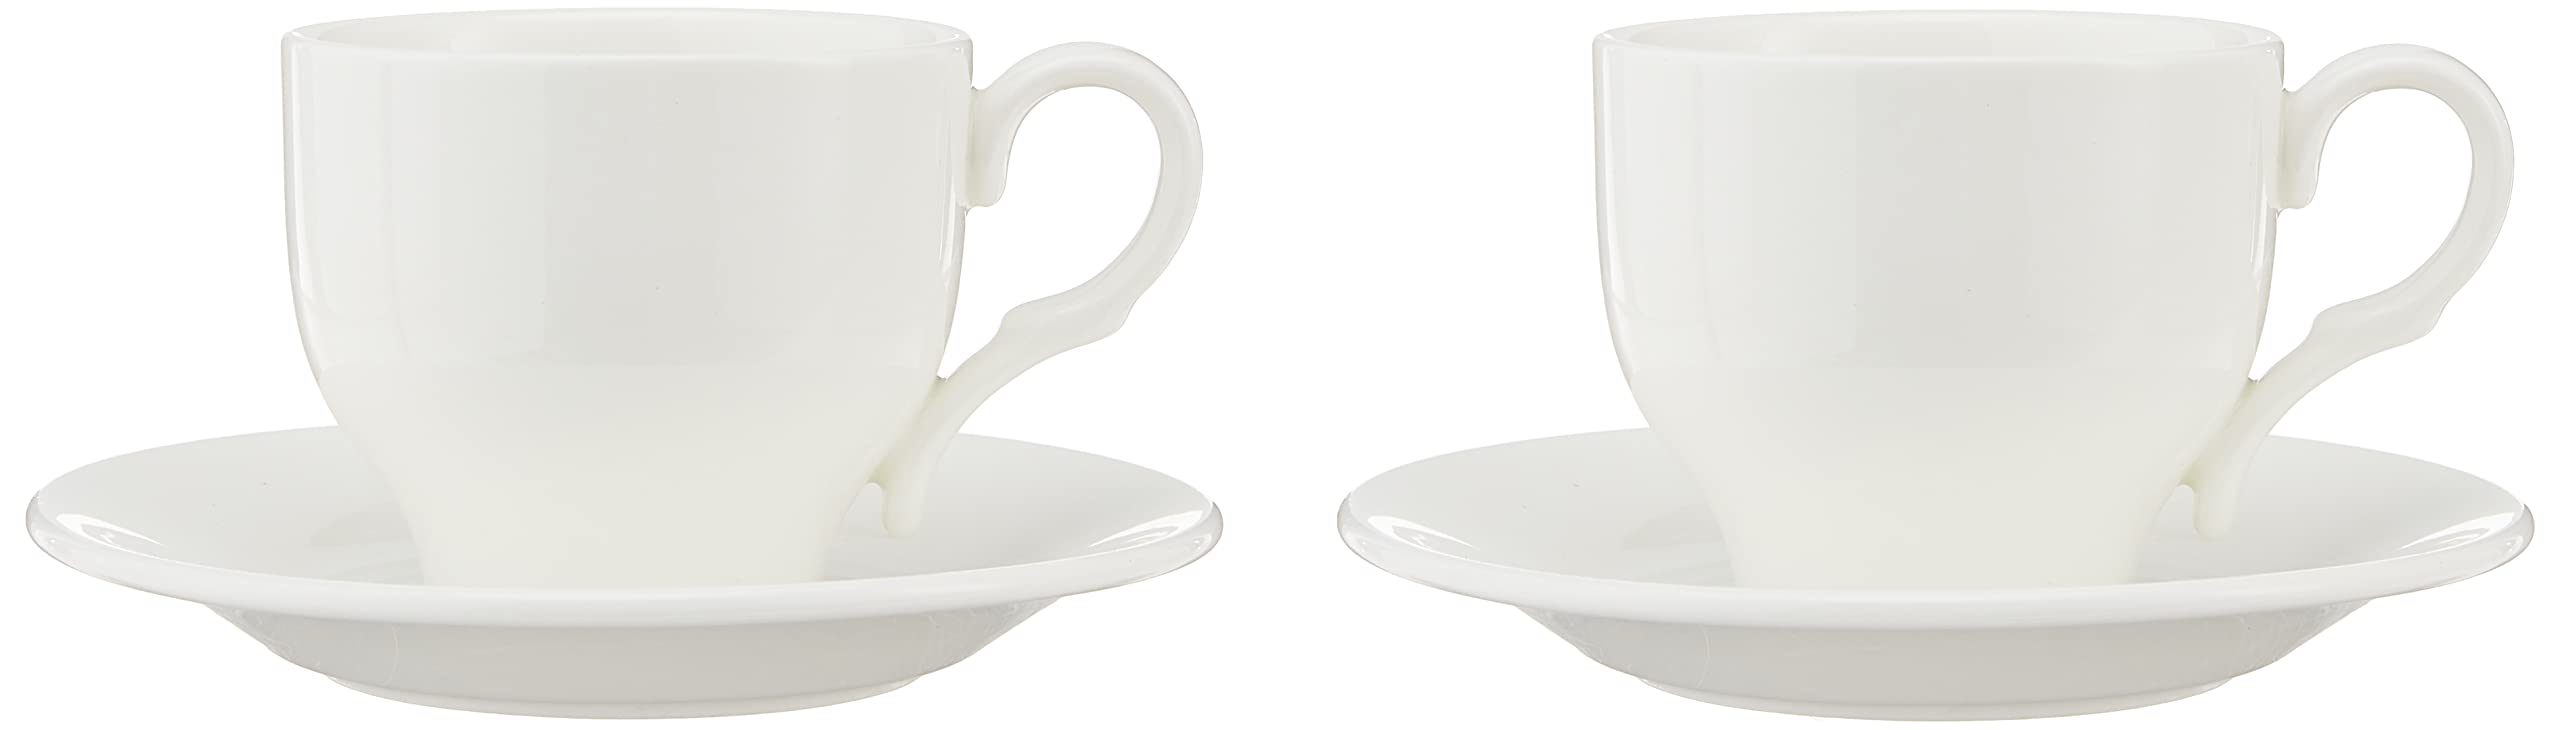 Classique Wilmax WL-993009/2C Lot de 2 tasses à thé et soucoupes en porcelaine Blanc Capacité 220 ml igg6KRaOE tout pour vous